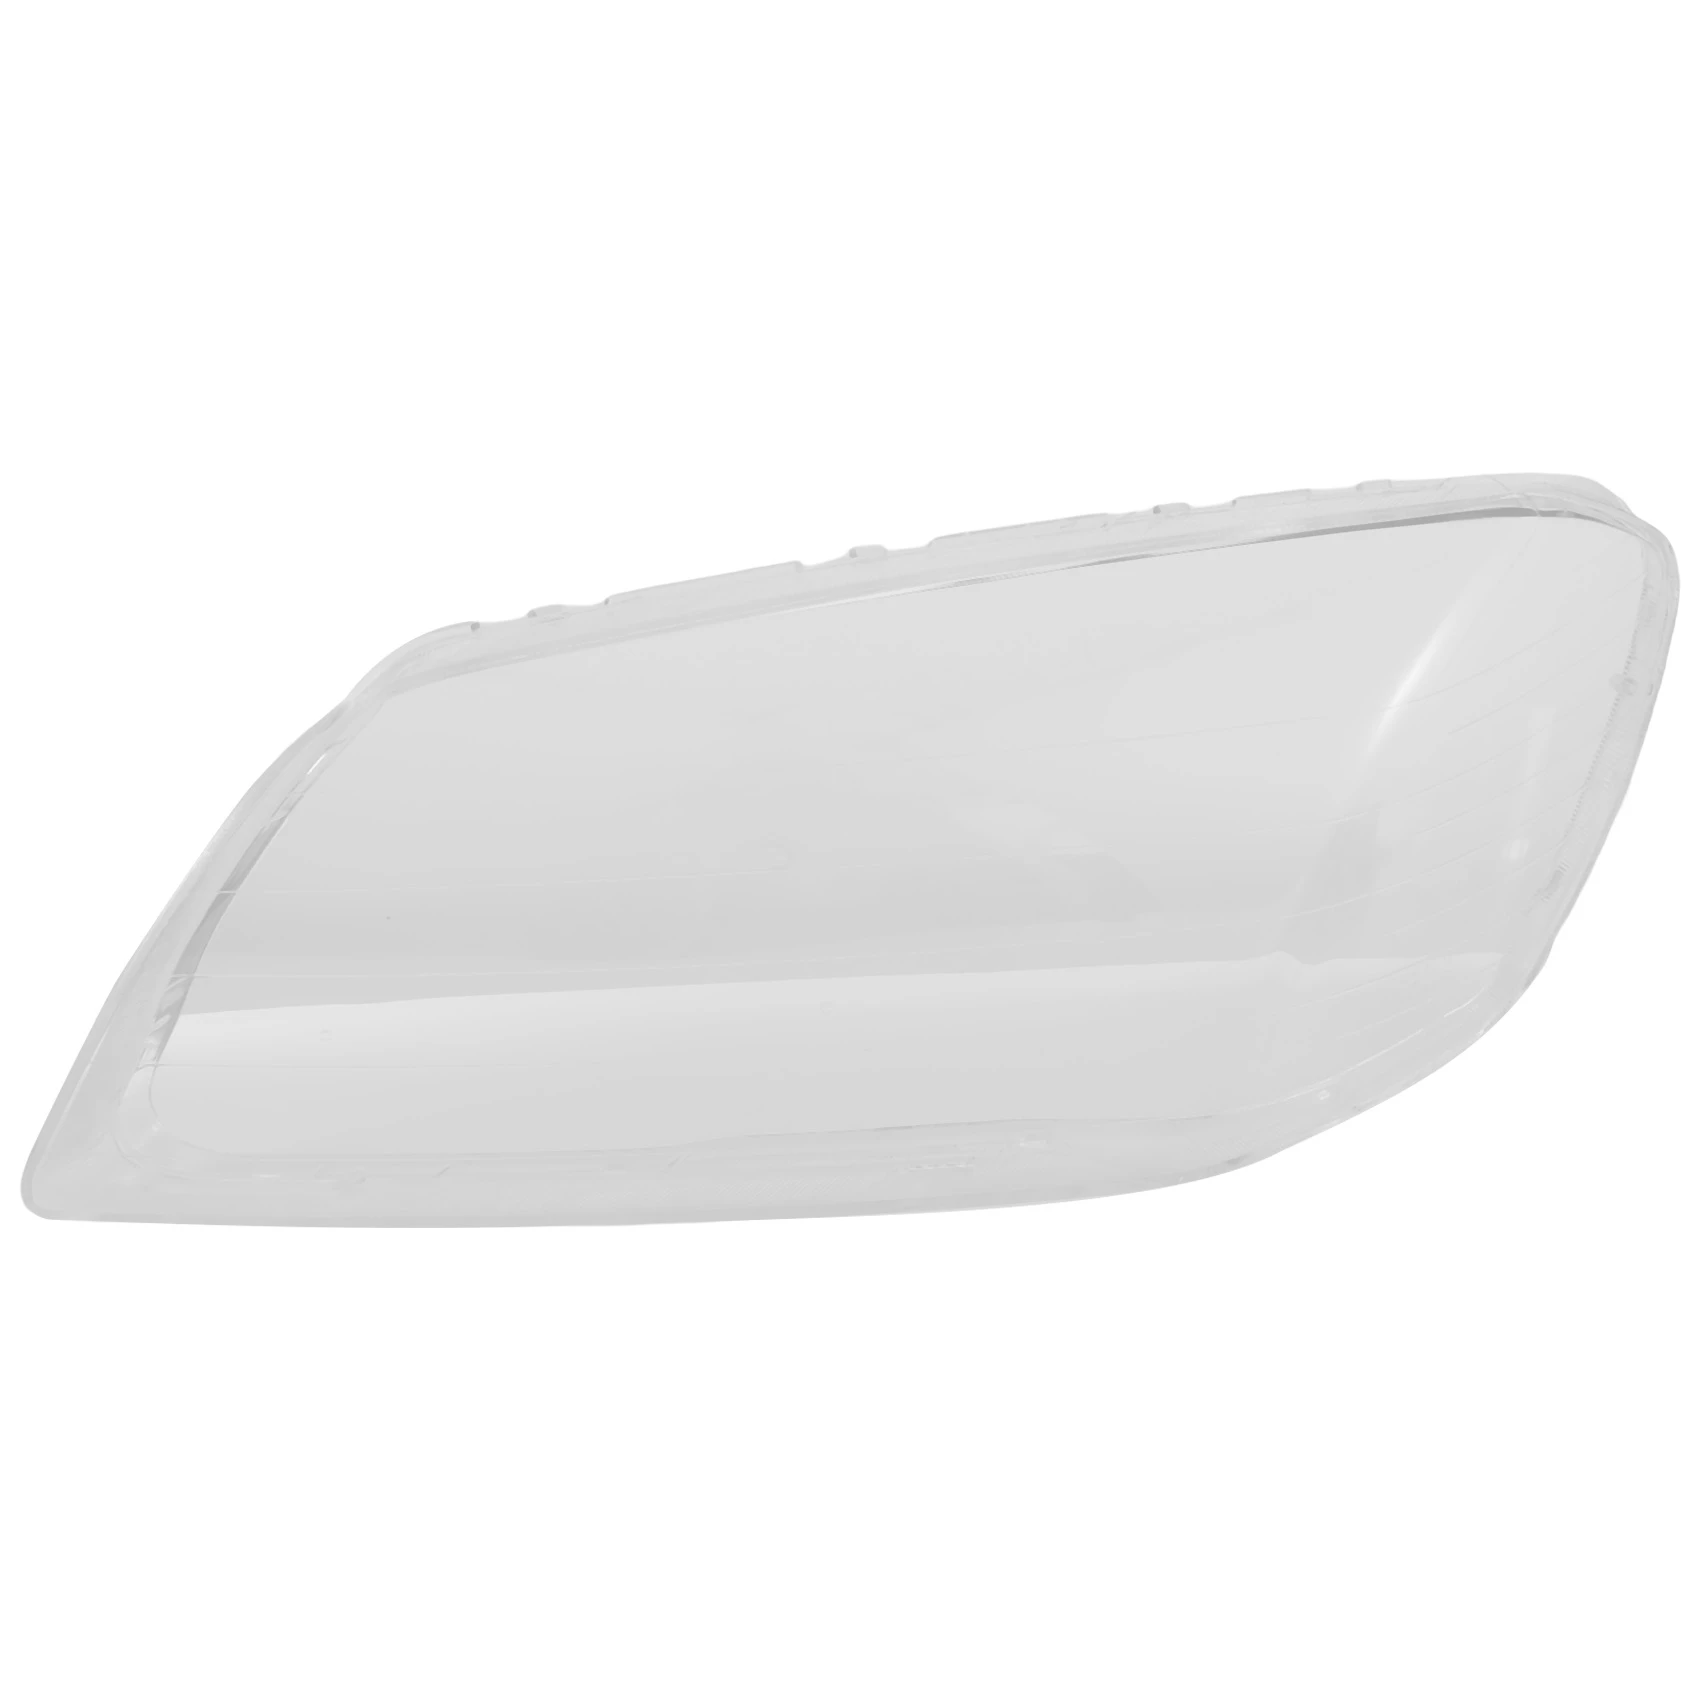 

Left Side Car Headlight Lens Cover Head Light Lamp Shade Shell Glass Cover for Chevrolet Crptivr 2008-2010